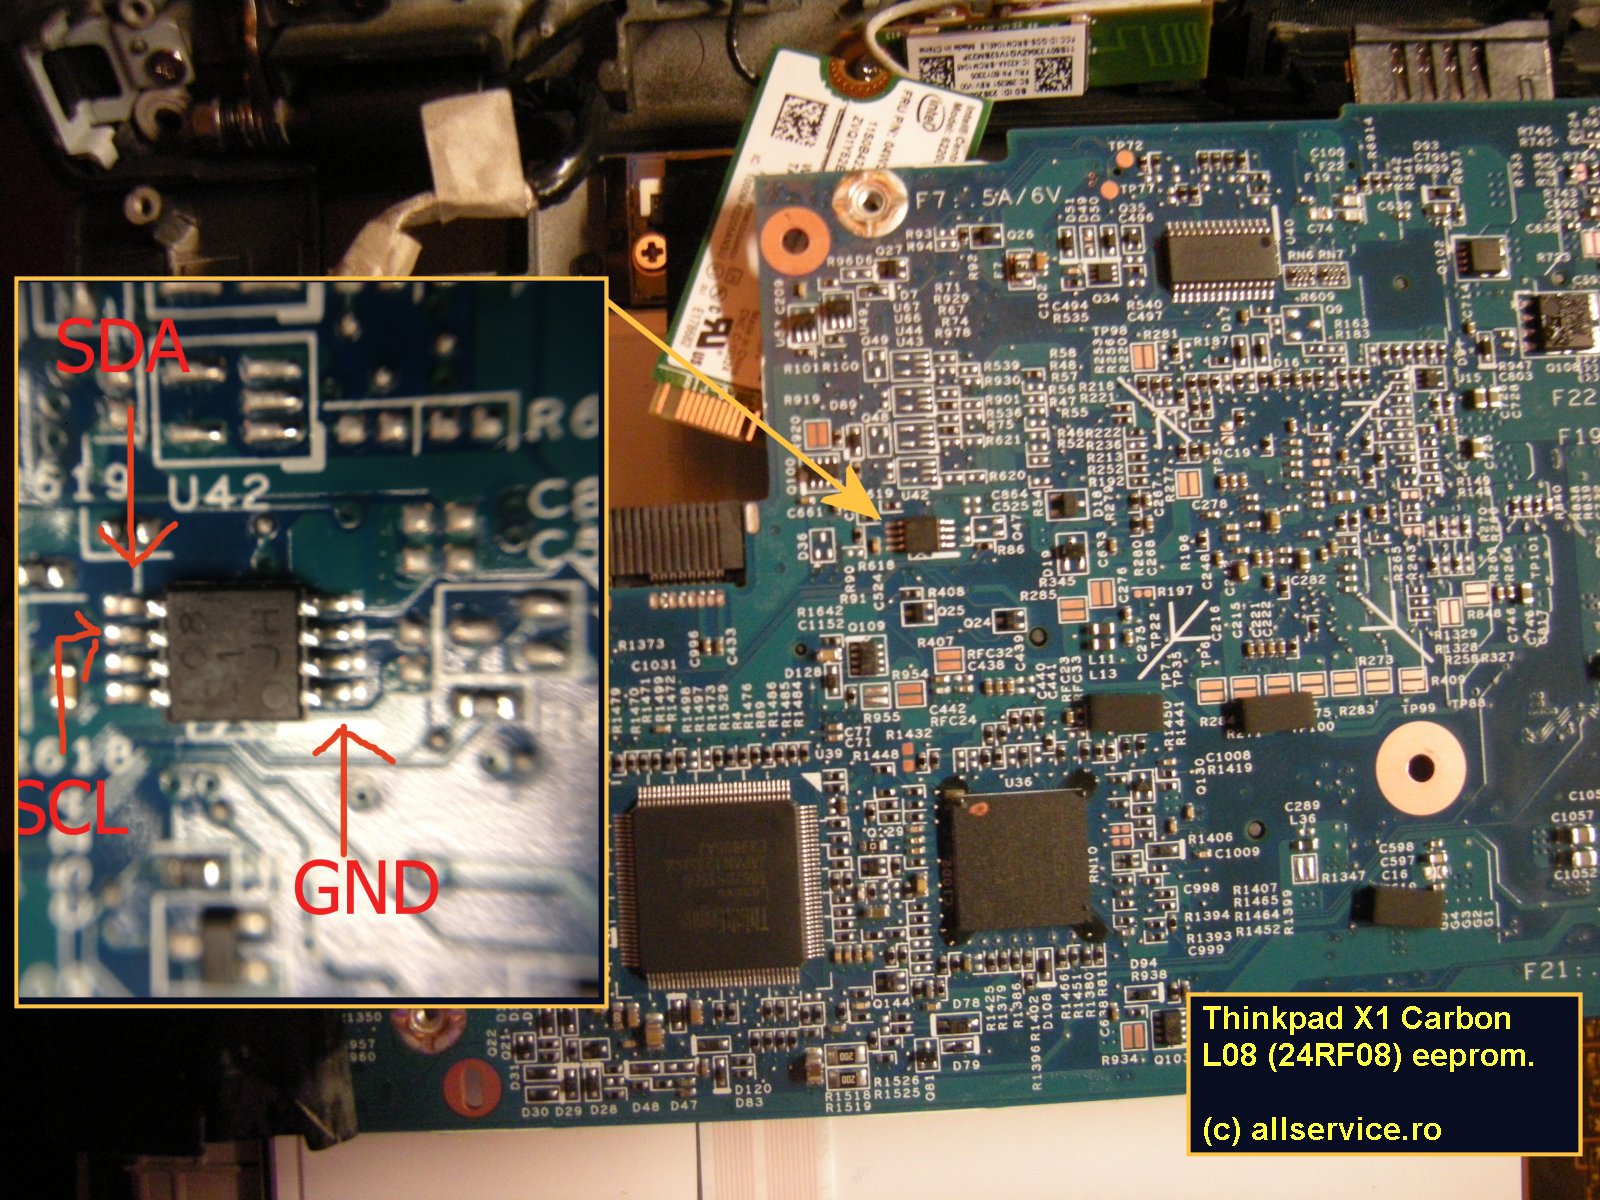 Lenovo T510 T520 T431s T430s T420s T400s T410s BIOS Supervisor Password Remove 